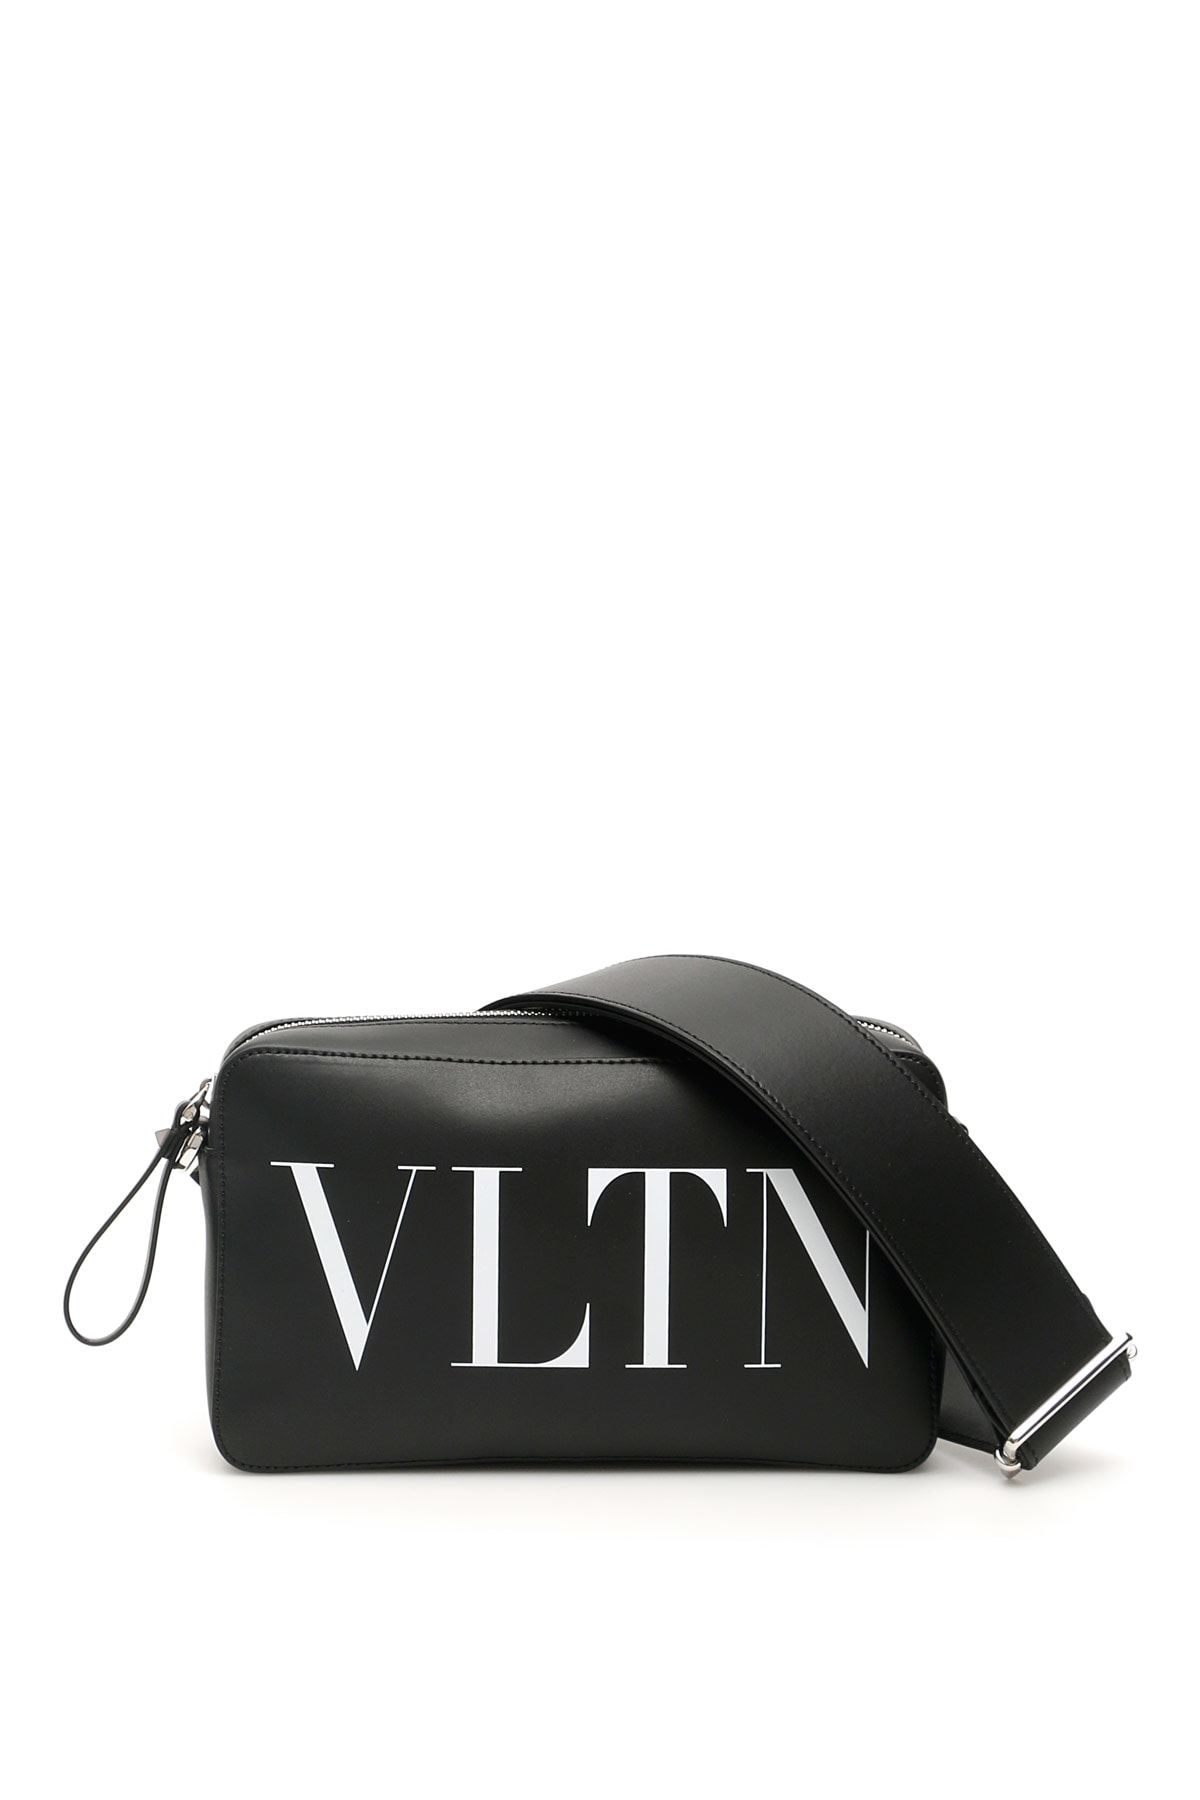 Valentino Garavani Vltn Print Bag In Nero Bianco (black)